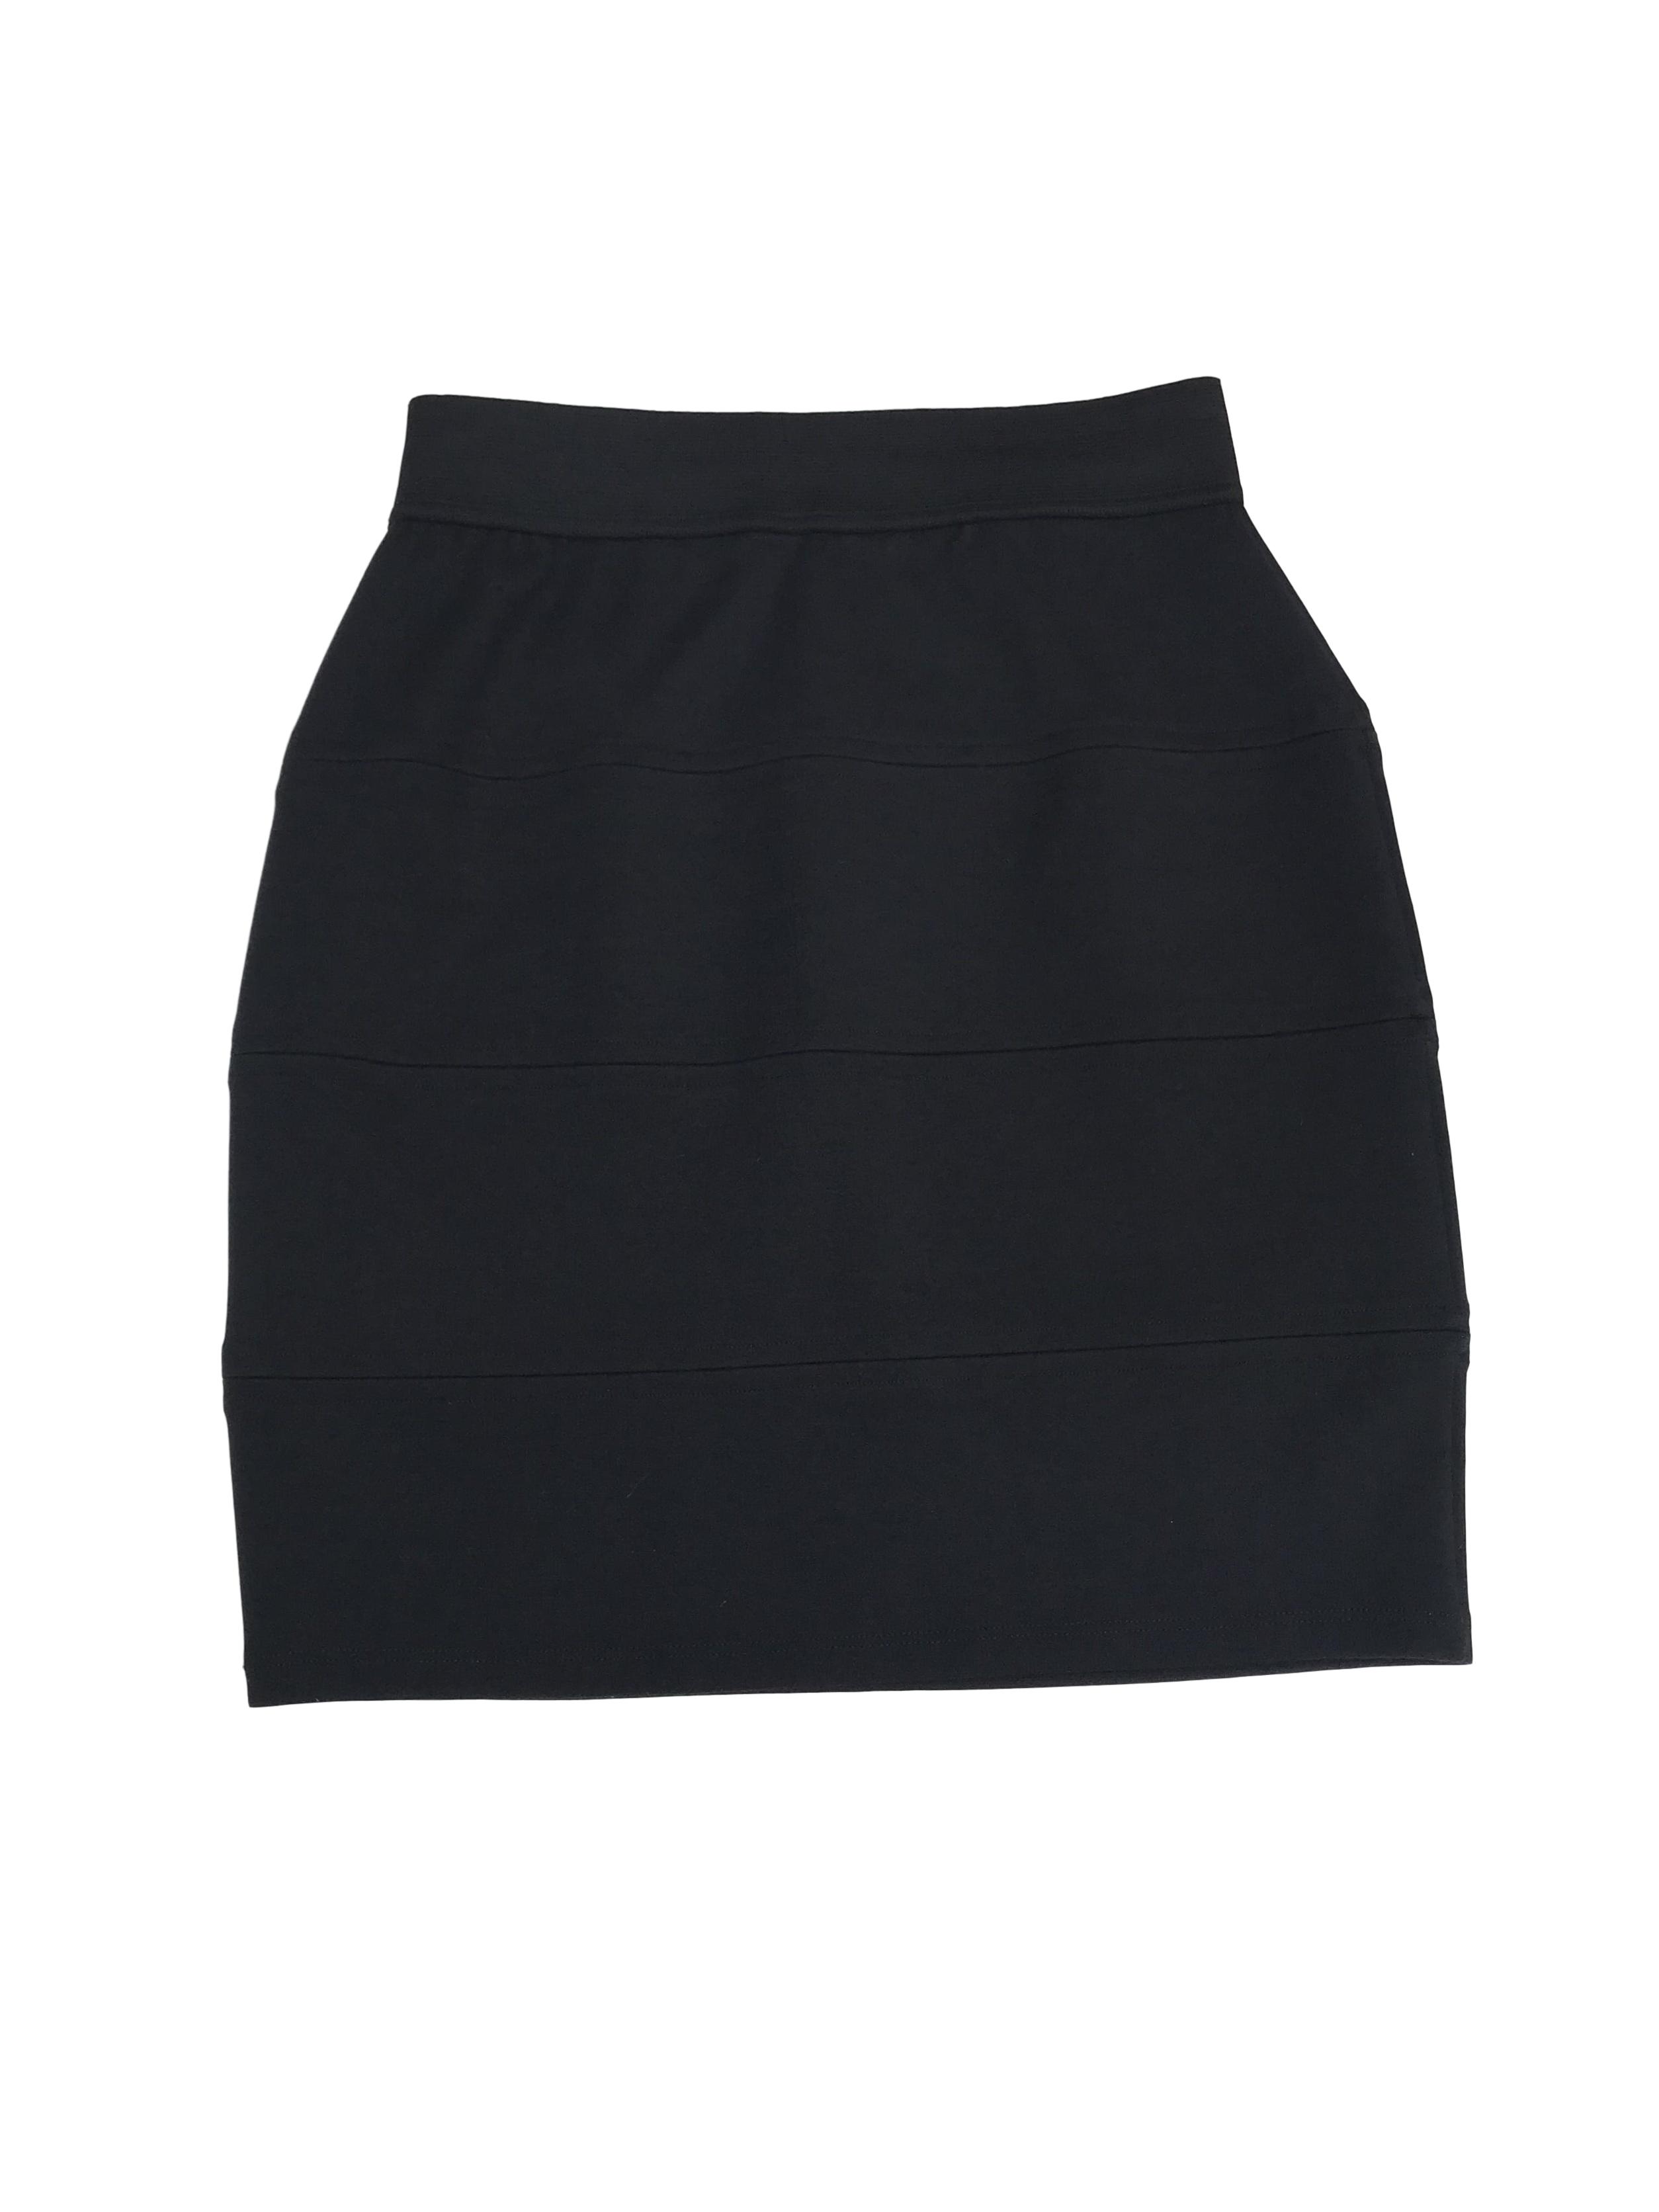 Falda tubo negra, tela tipo algodón strech, cortes horizontales y elástico en la cintura. Largo 47cm